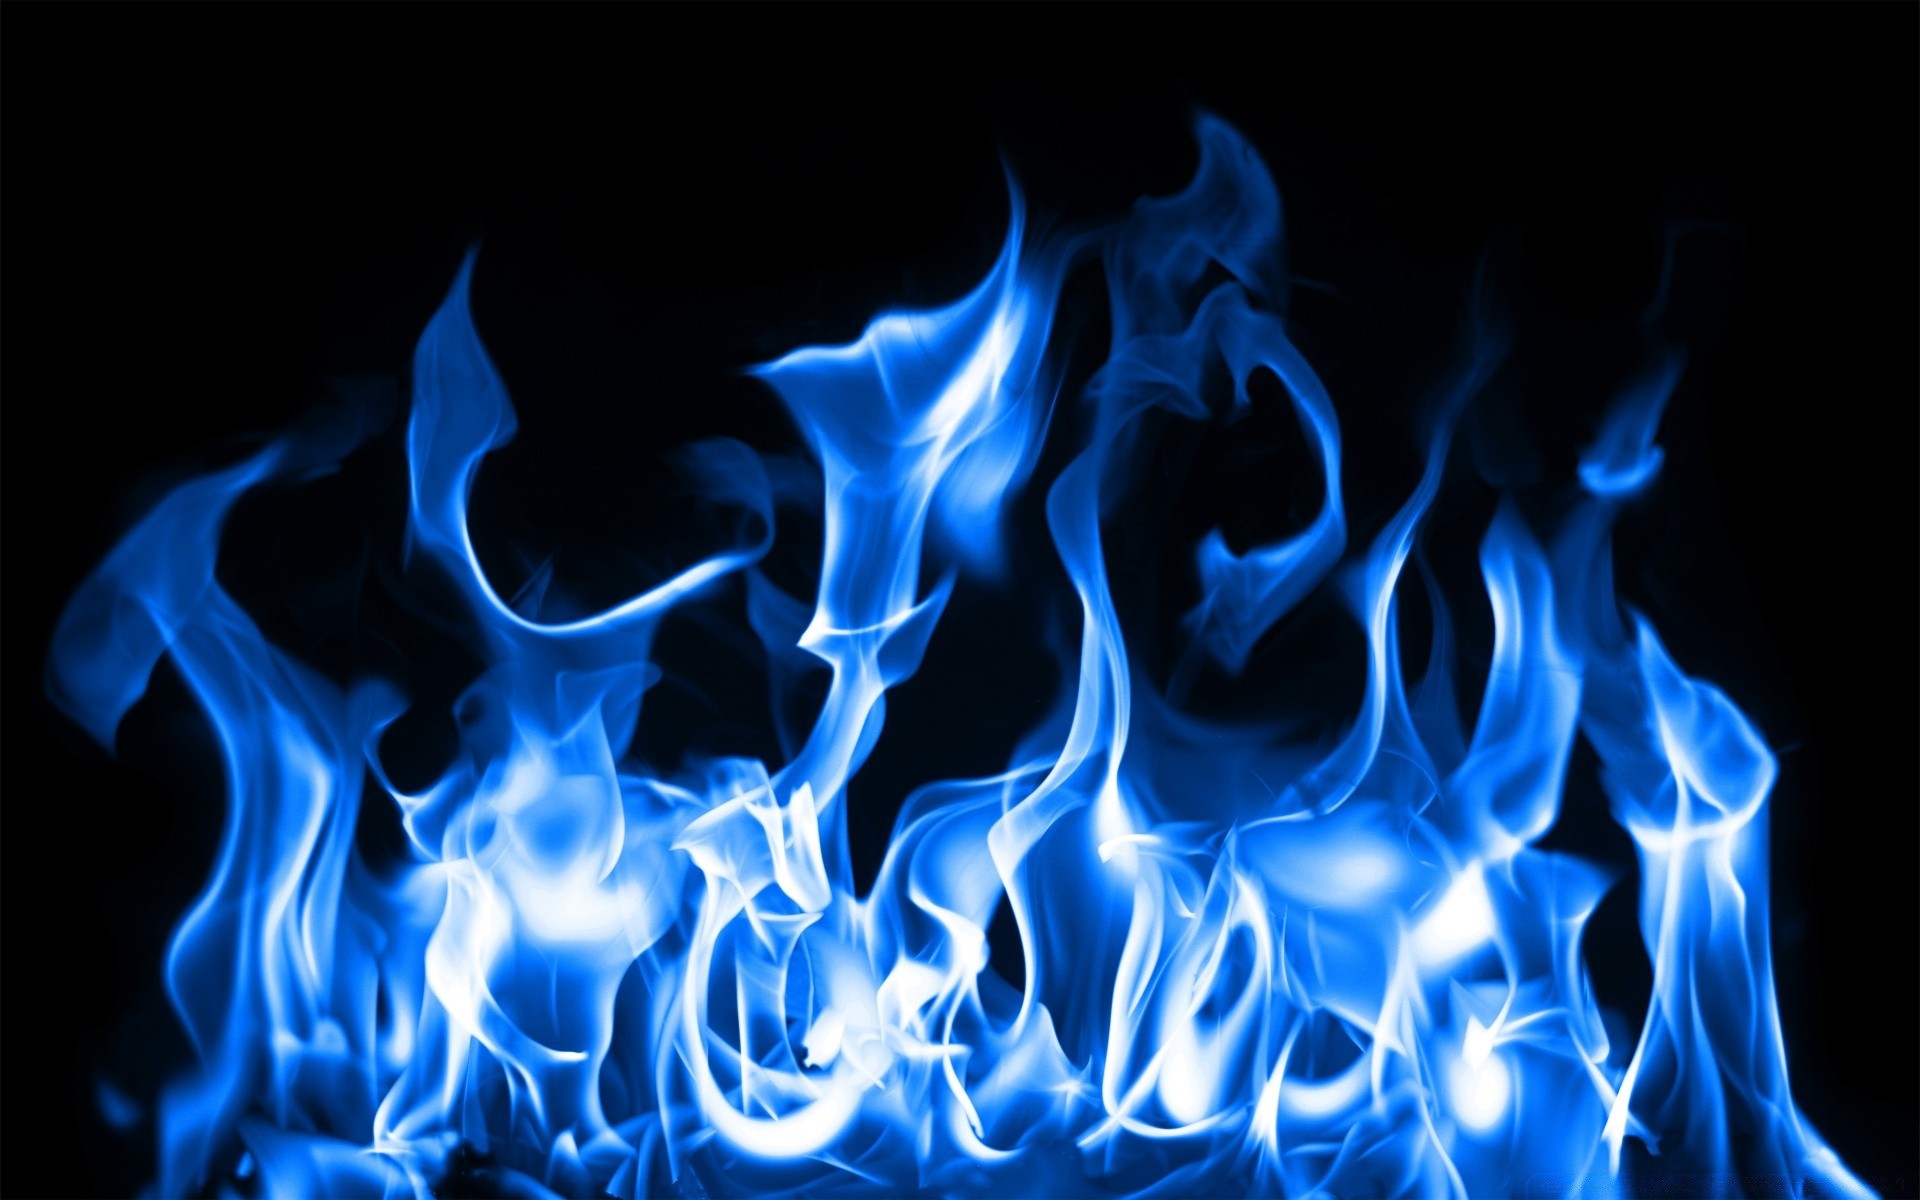 огонь пламя дым сжечь сожгли тепло опасность свет легковоспламеняющиеся аннотация костер темный горячая волна блейз дизайн энергии движения шаблон инферно магия